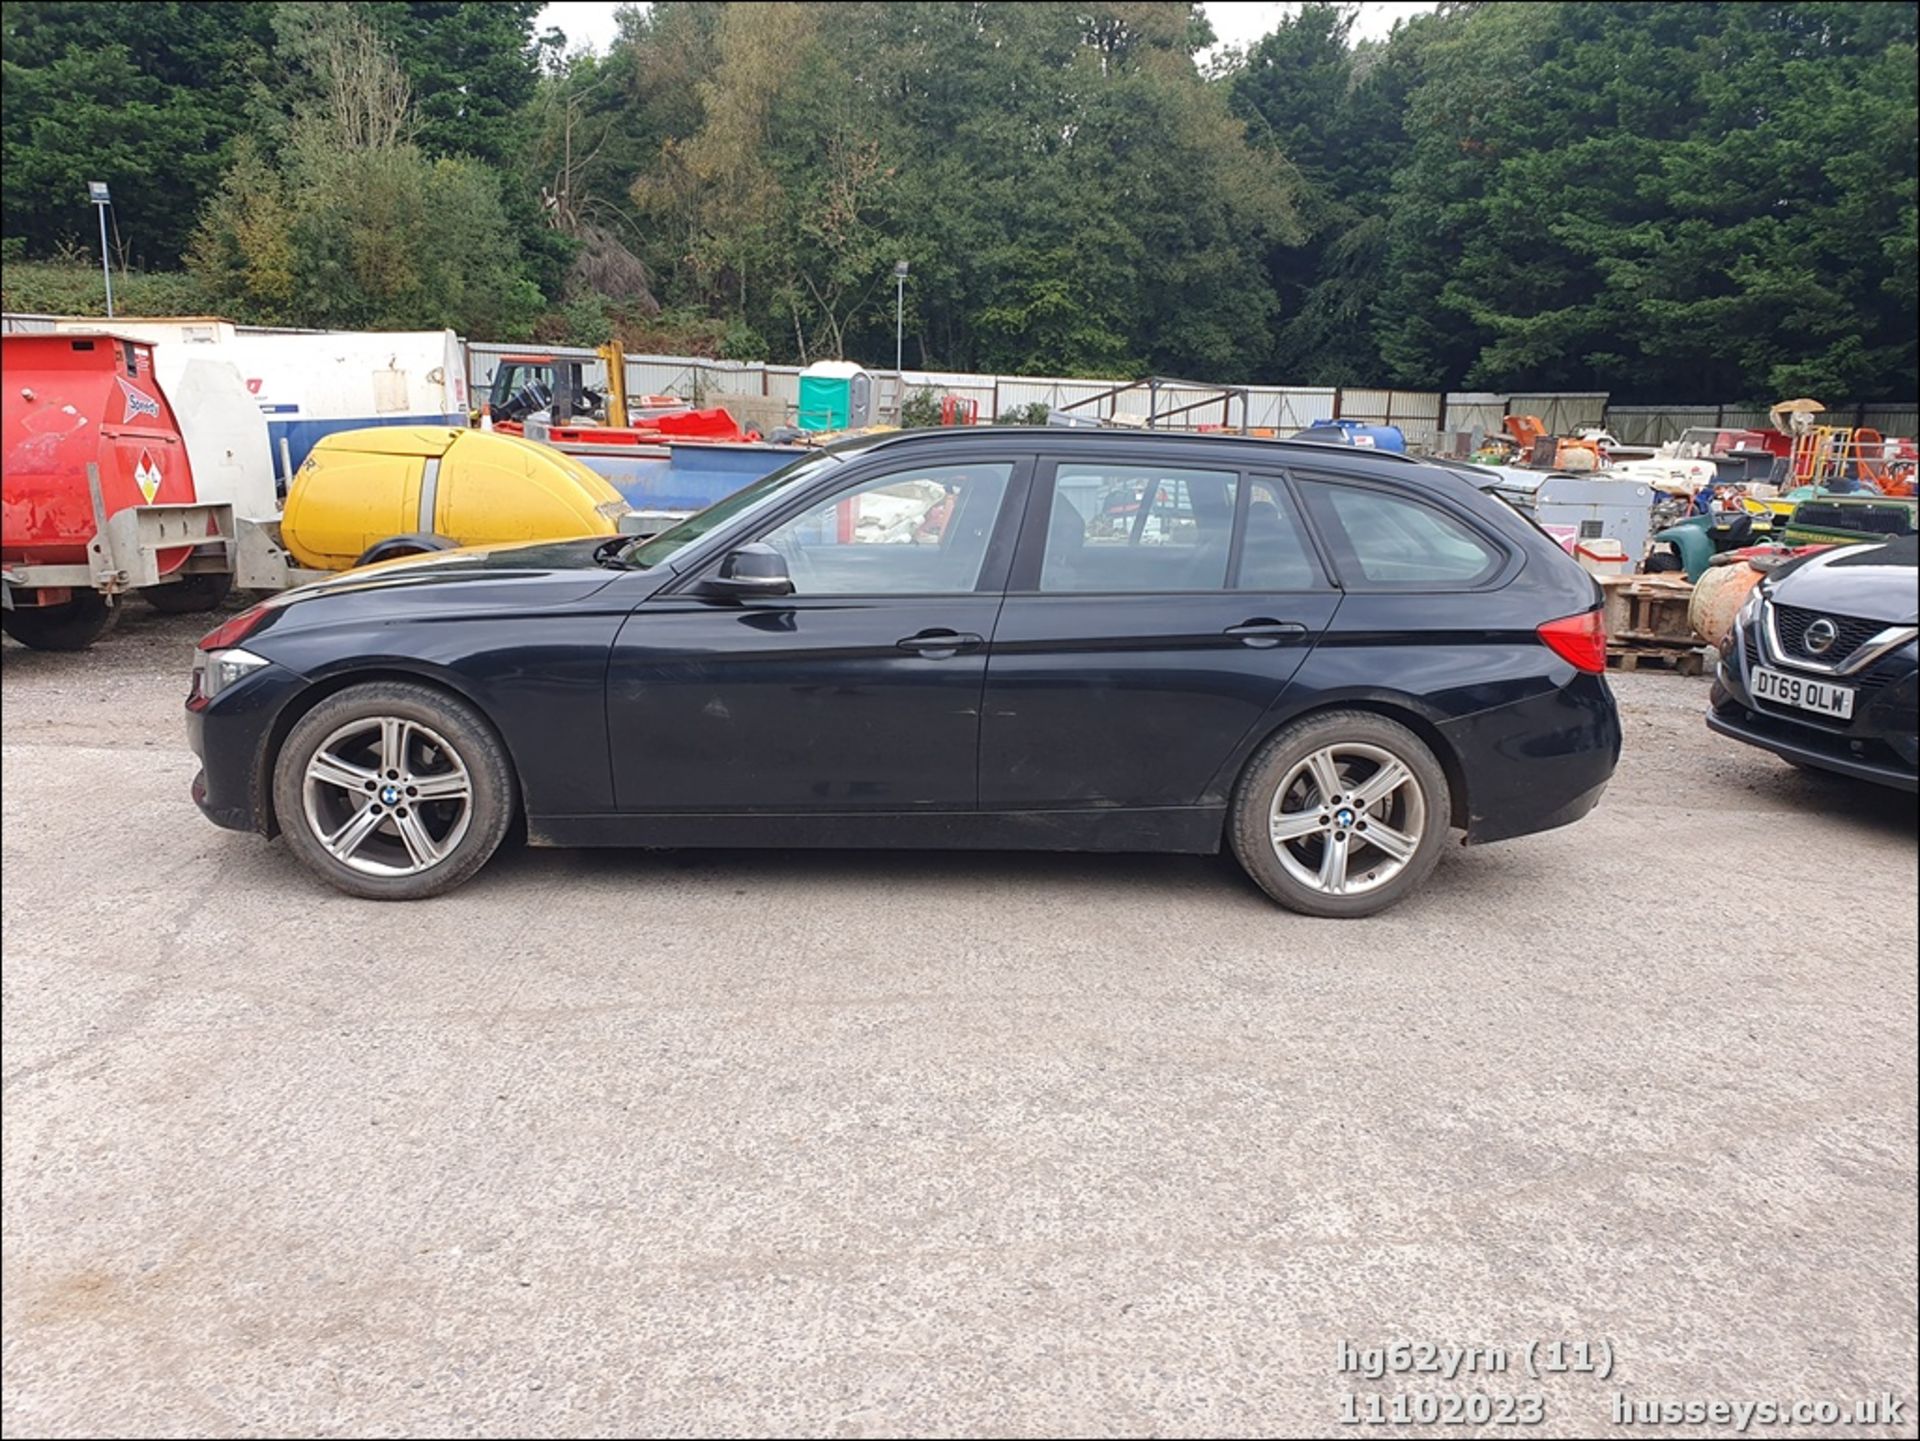 13/62 BMW 318D SE - 1995cc 5dr Estate (Black, 201k) - Image 12 of 58